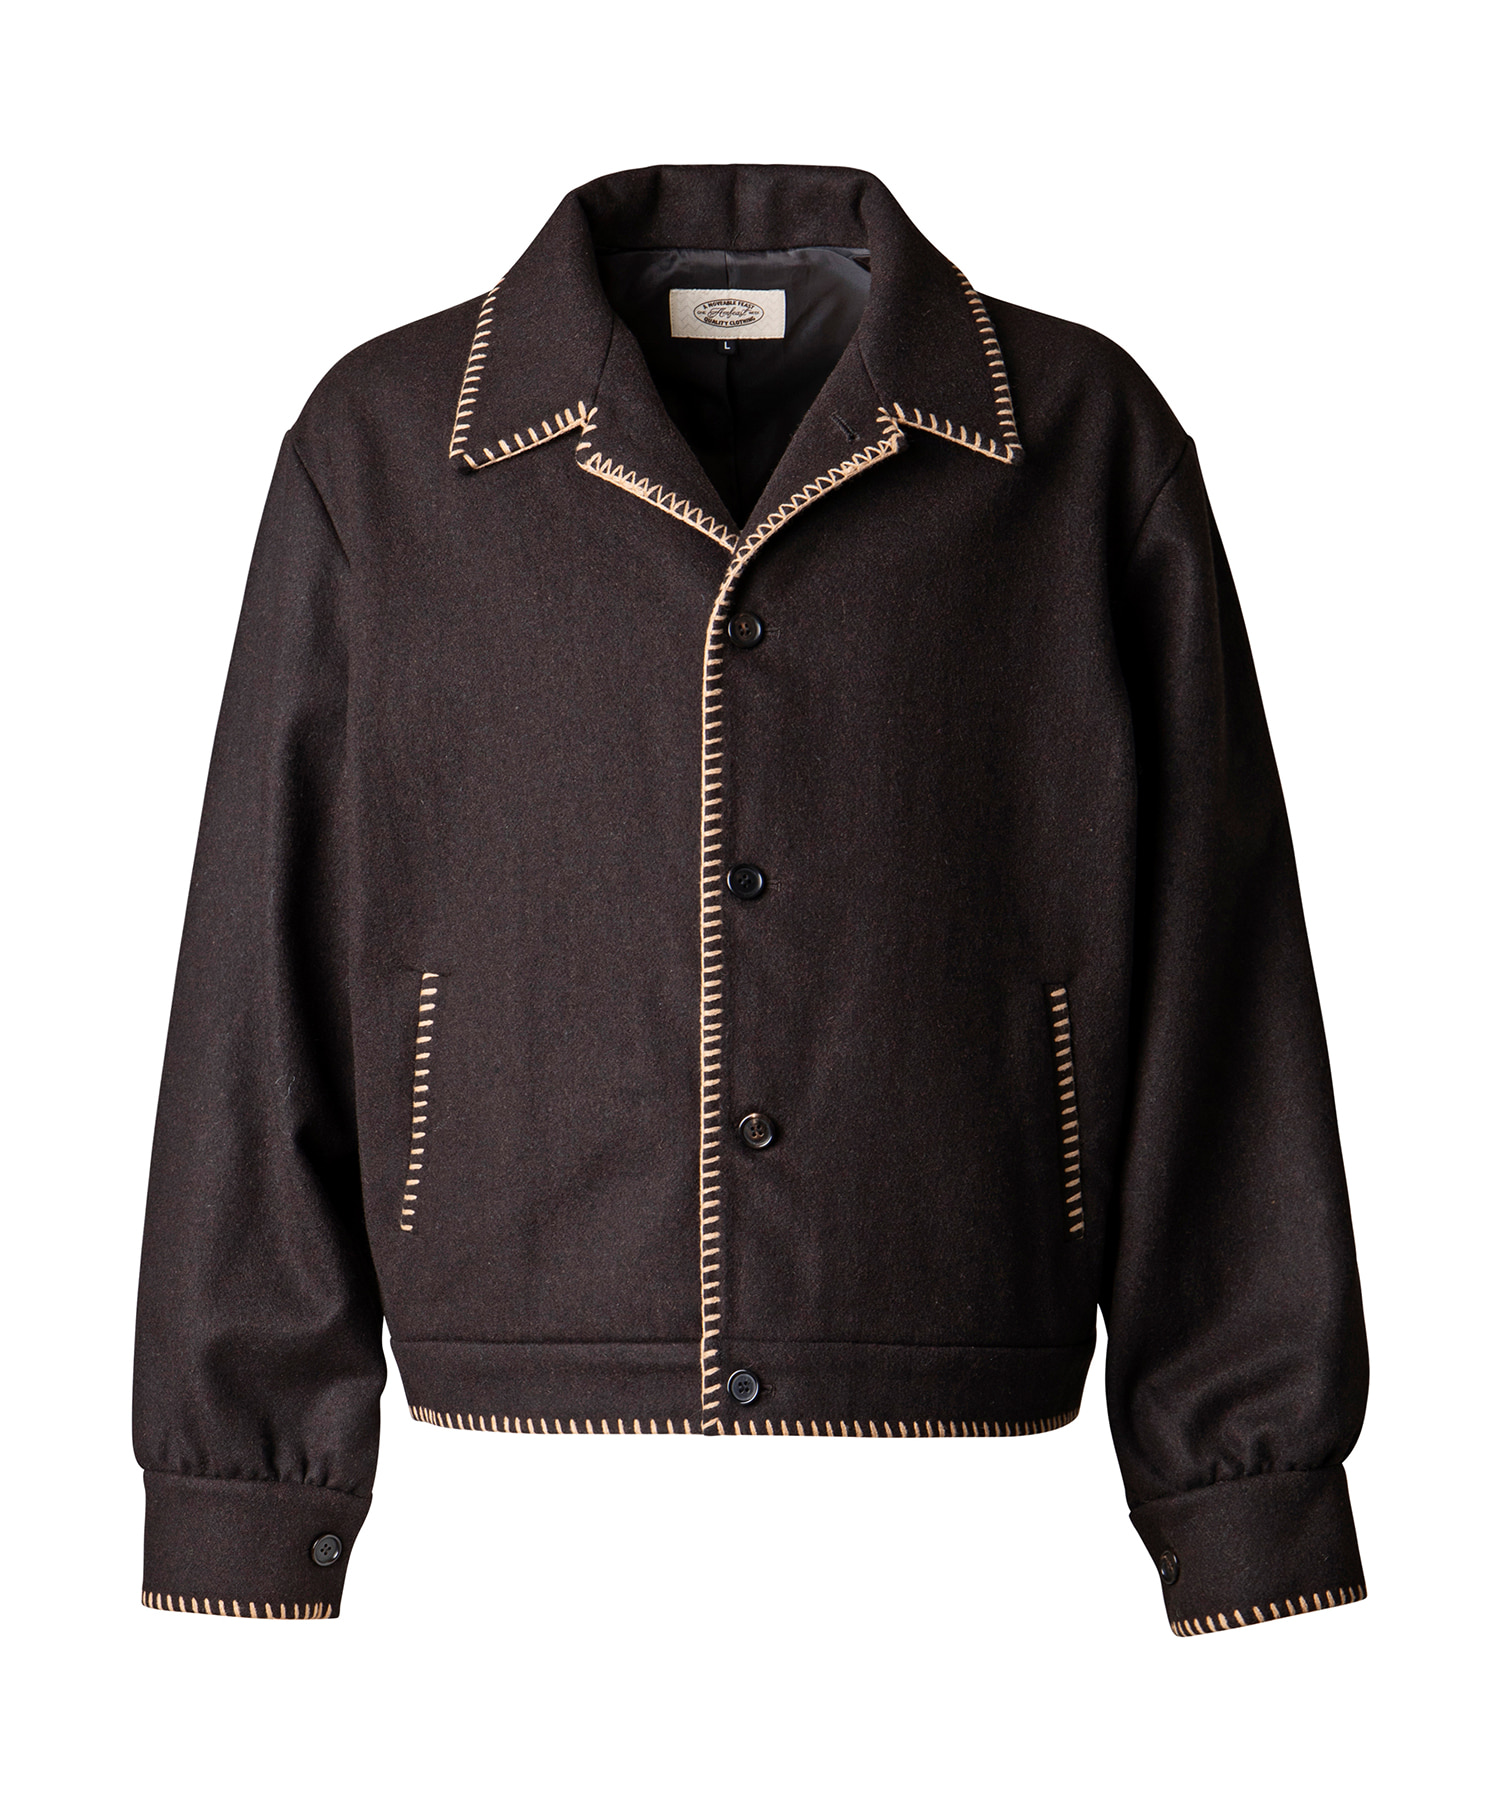 Western wool jacket BrownAMFEAST(암피스트)